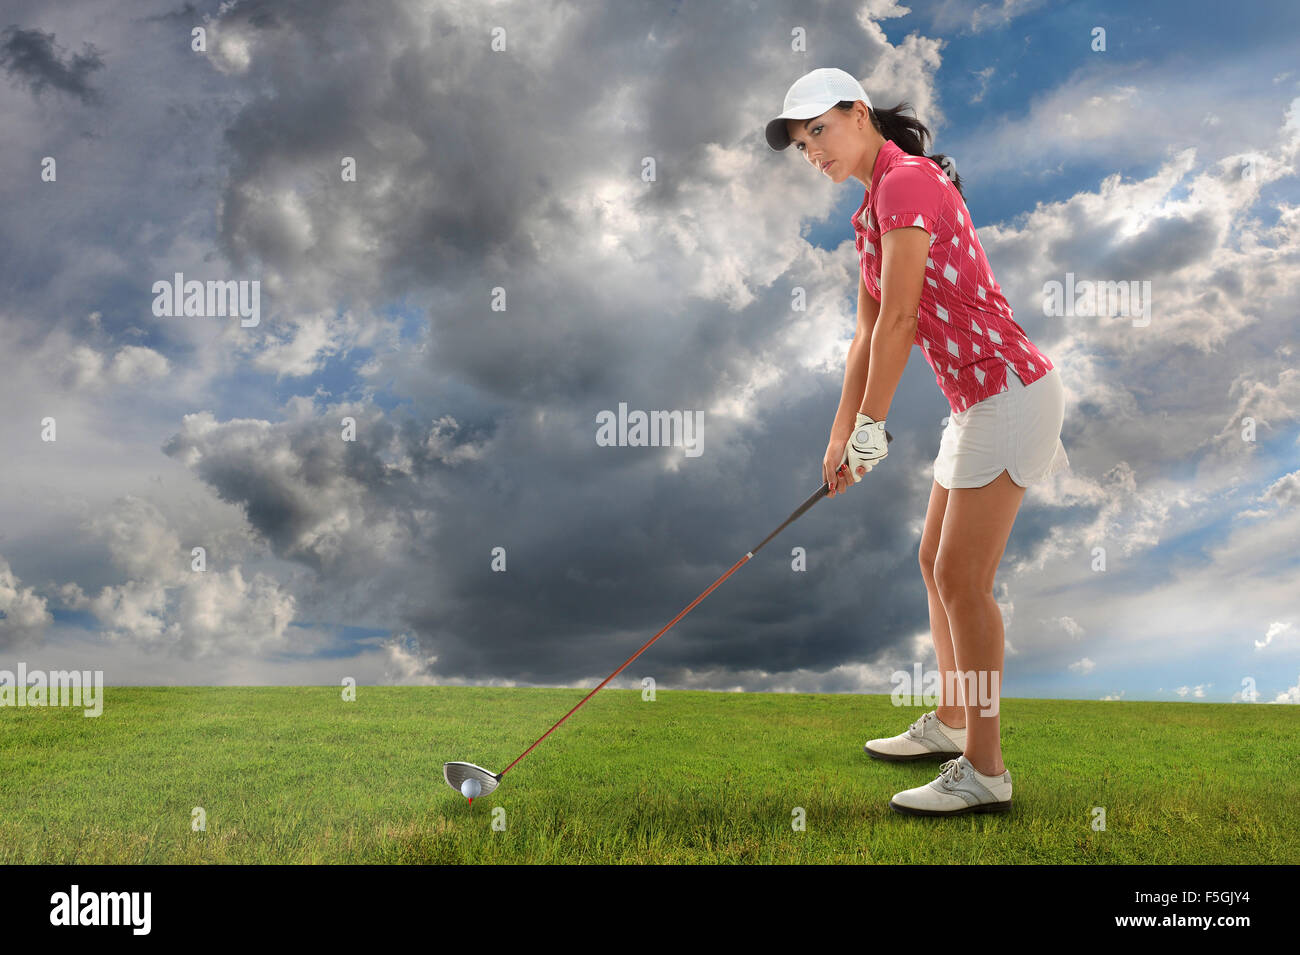 Hermosa joven jugando al golf con conductor Foto de stock